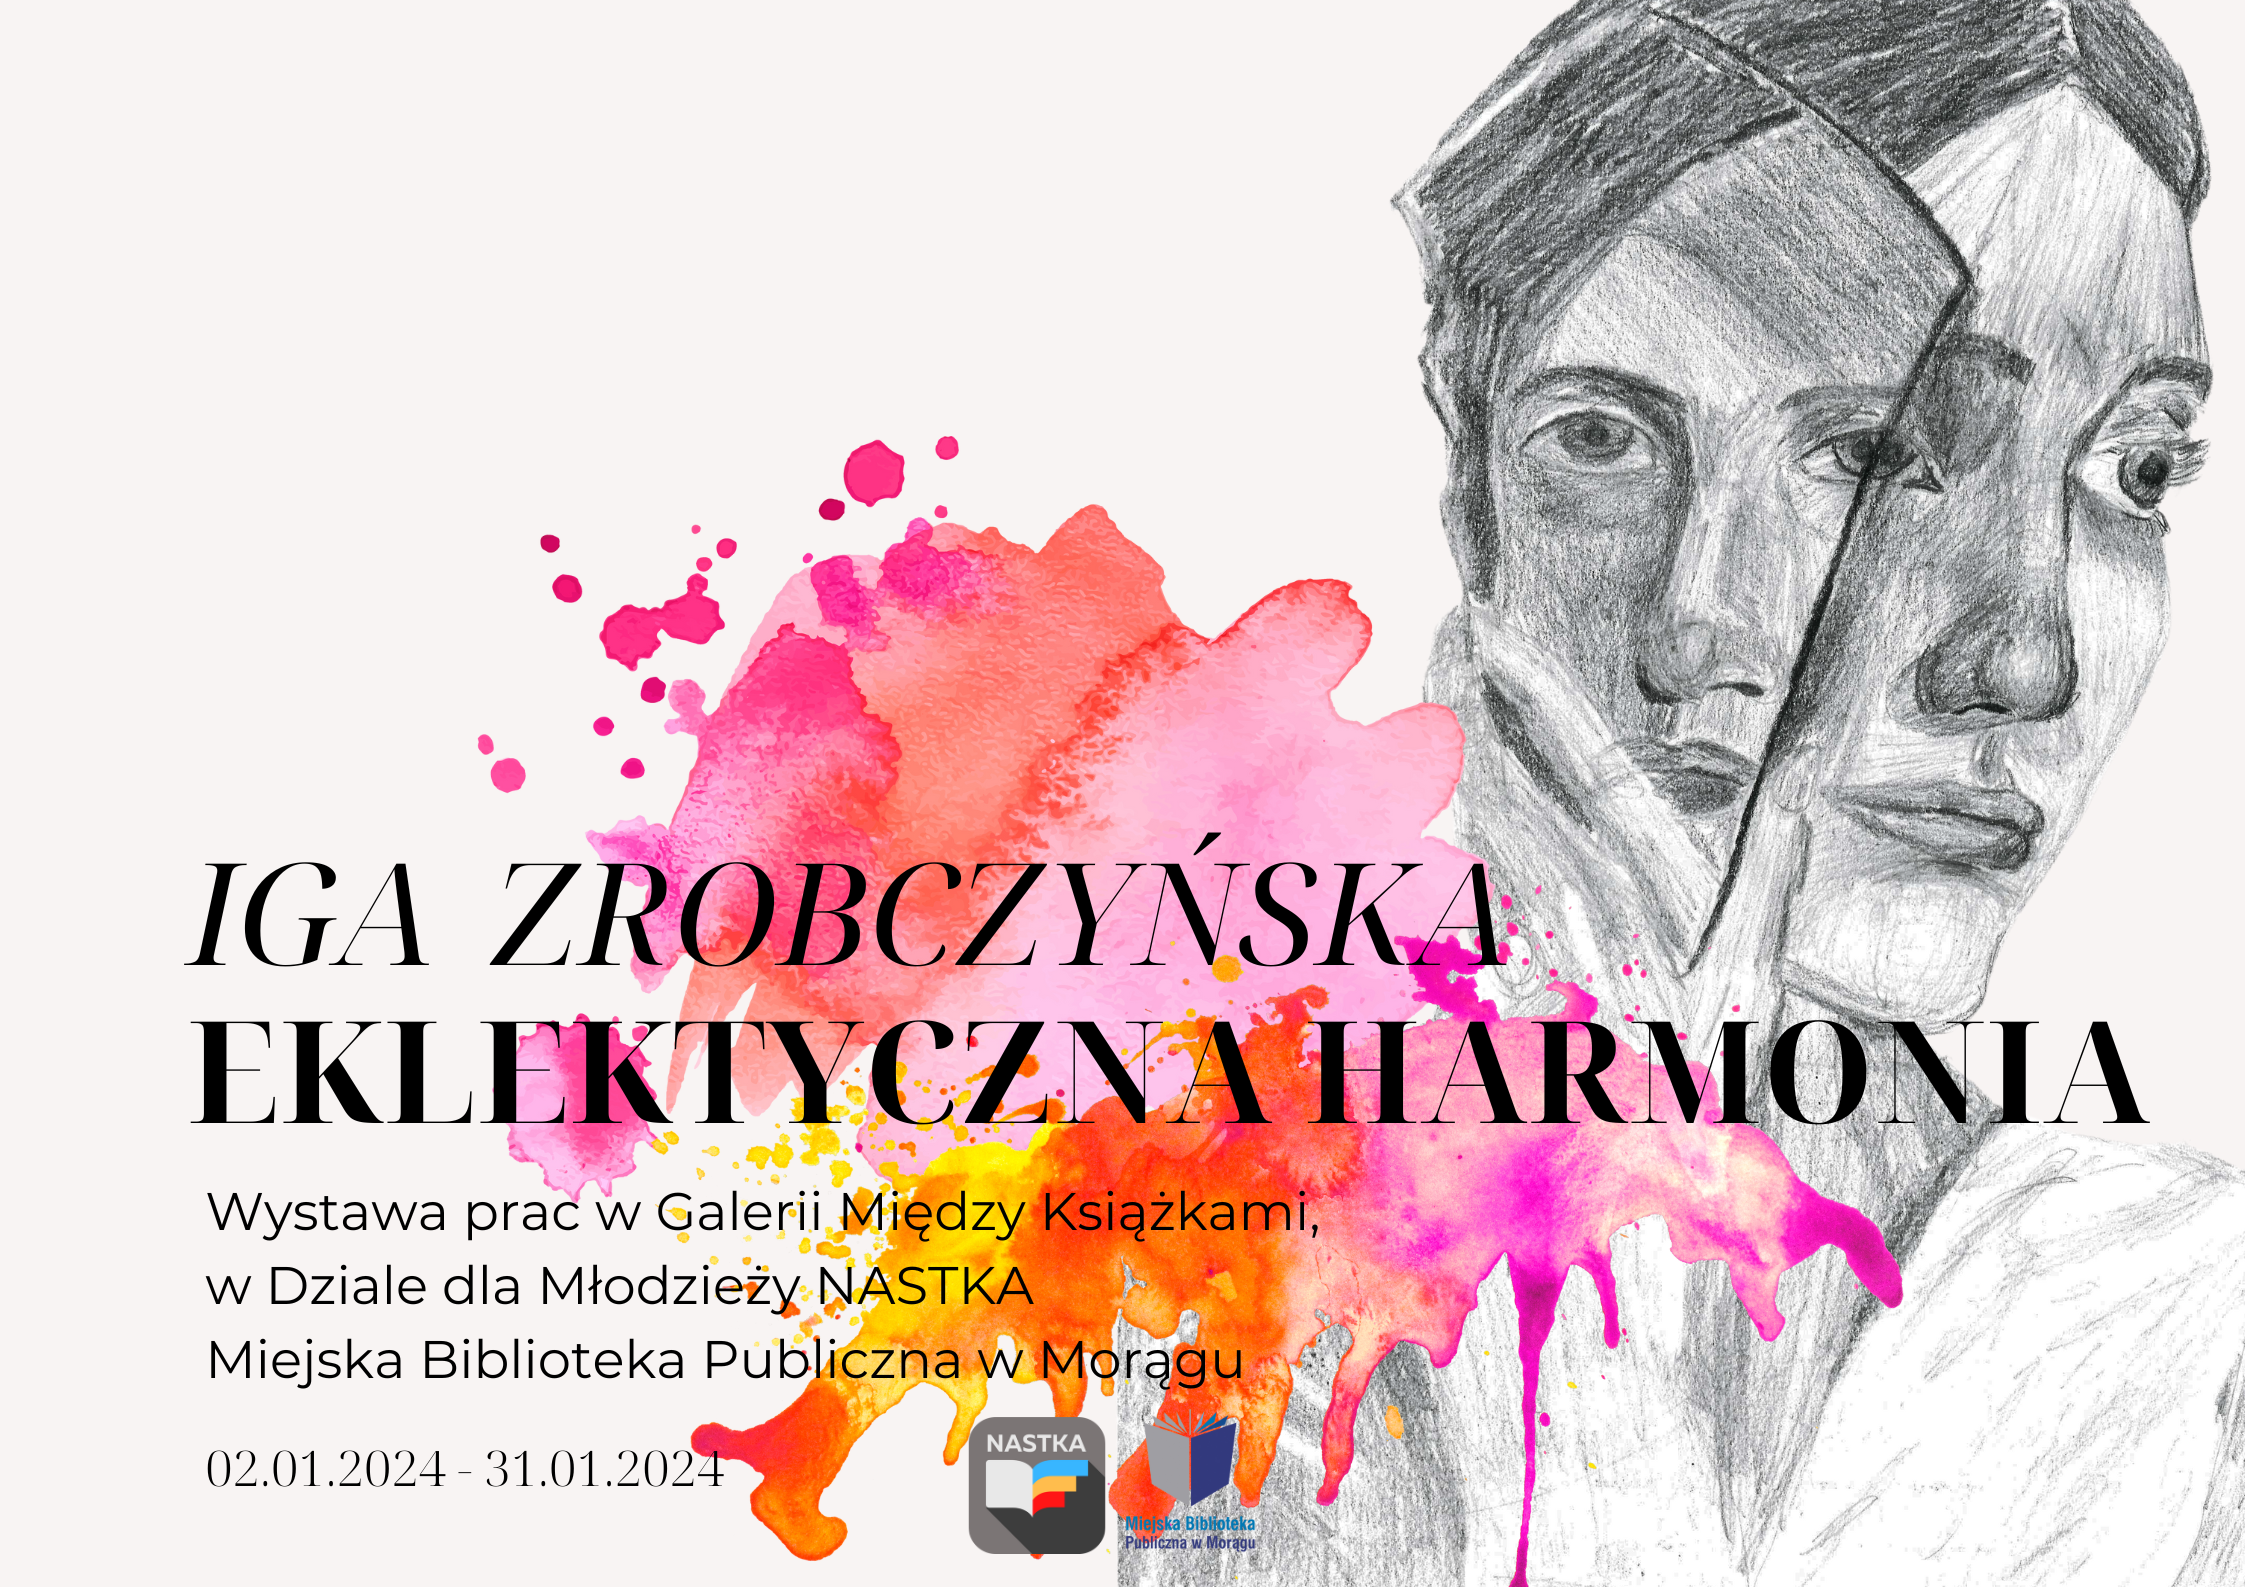 Plakat wystawy prac malarskich Igi Zrobczyńskiej. Po prawej szkic ołówkiem dwie twarze, po środku kolorowa plama farby, na niej tytuł